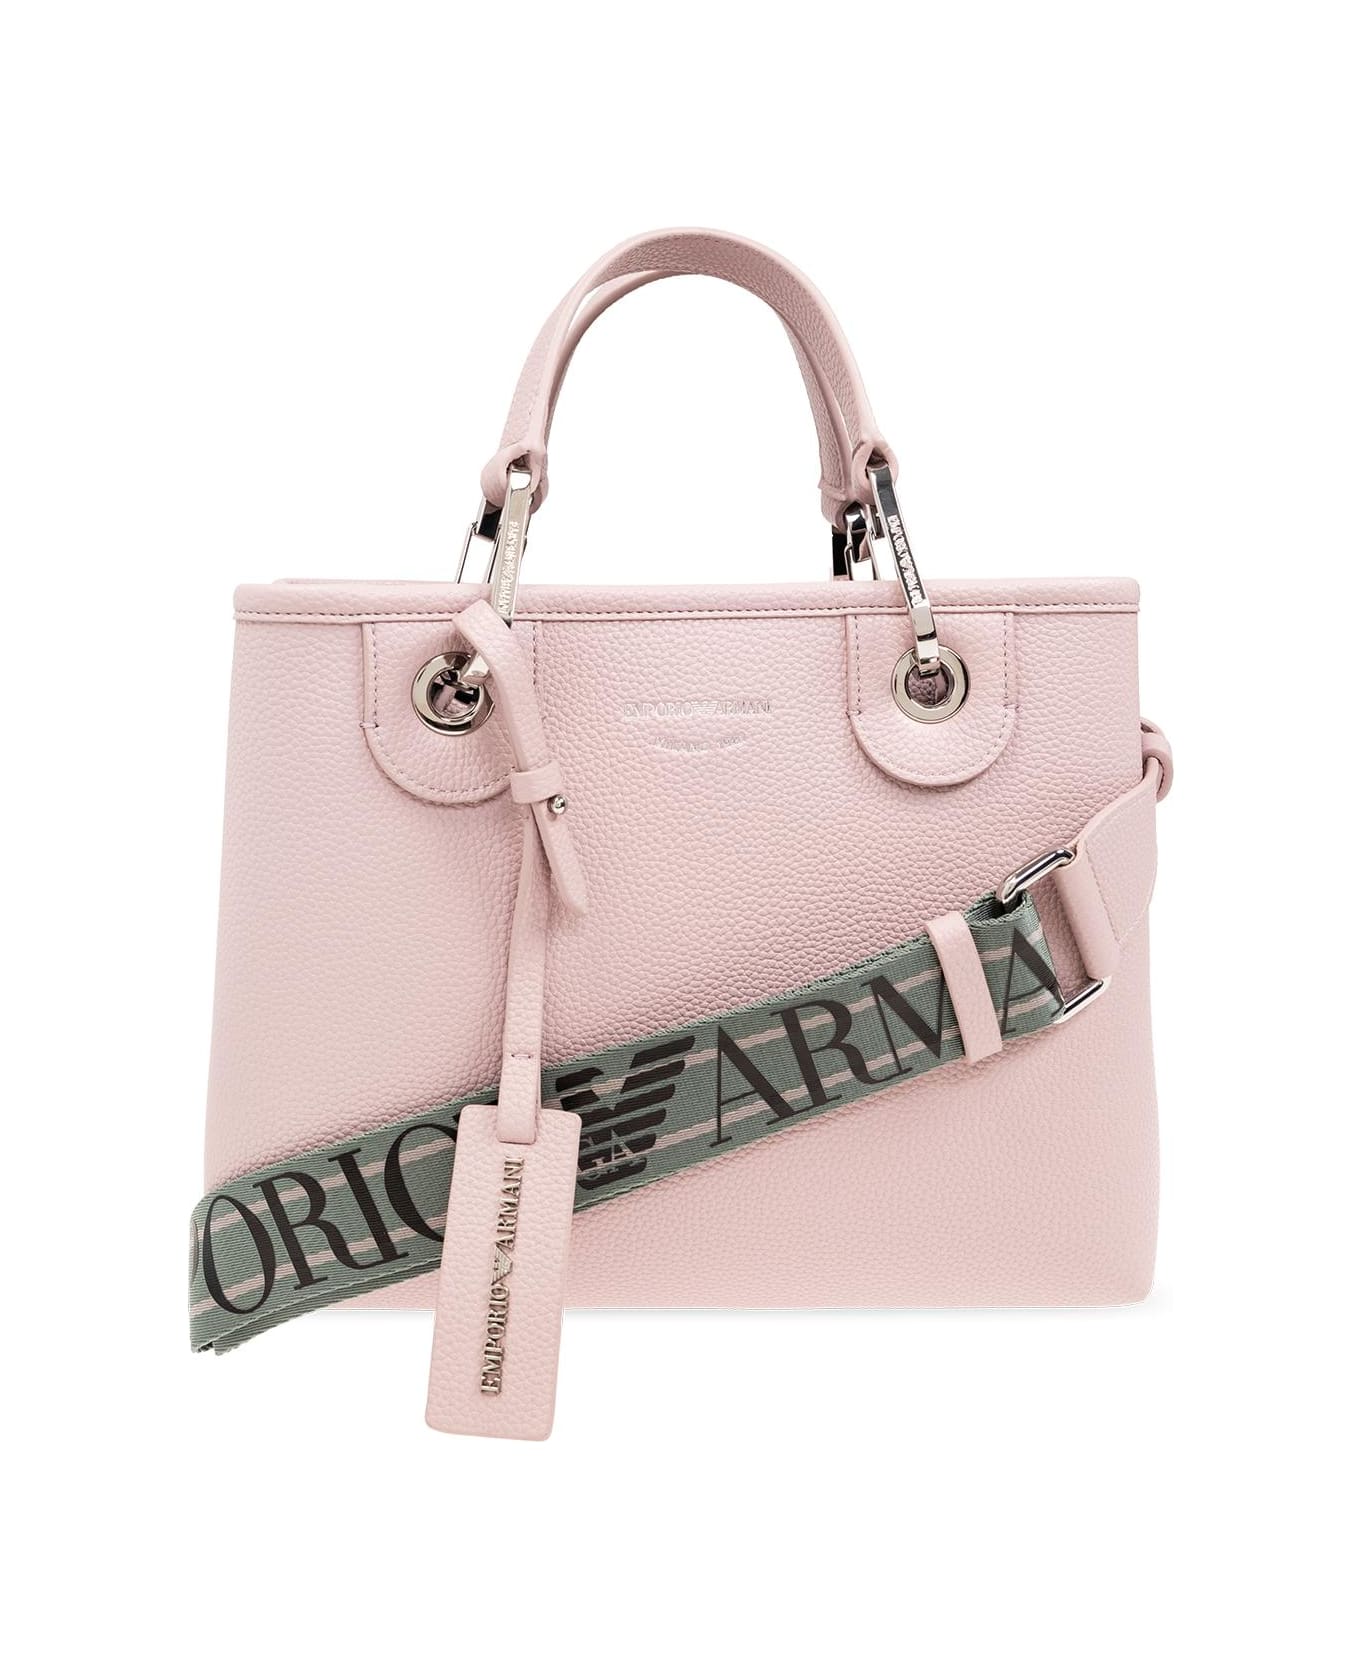 Emporio Armani Shopper Bag - Pink